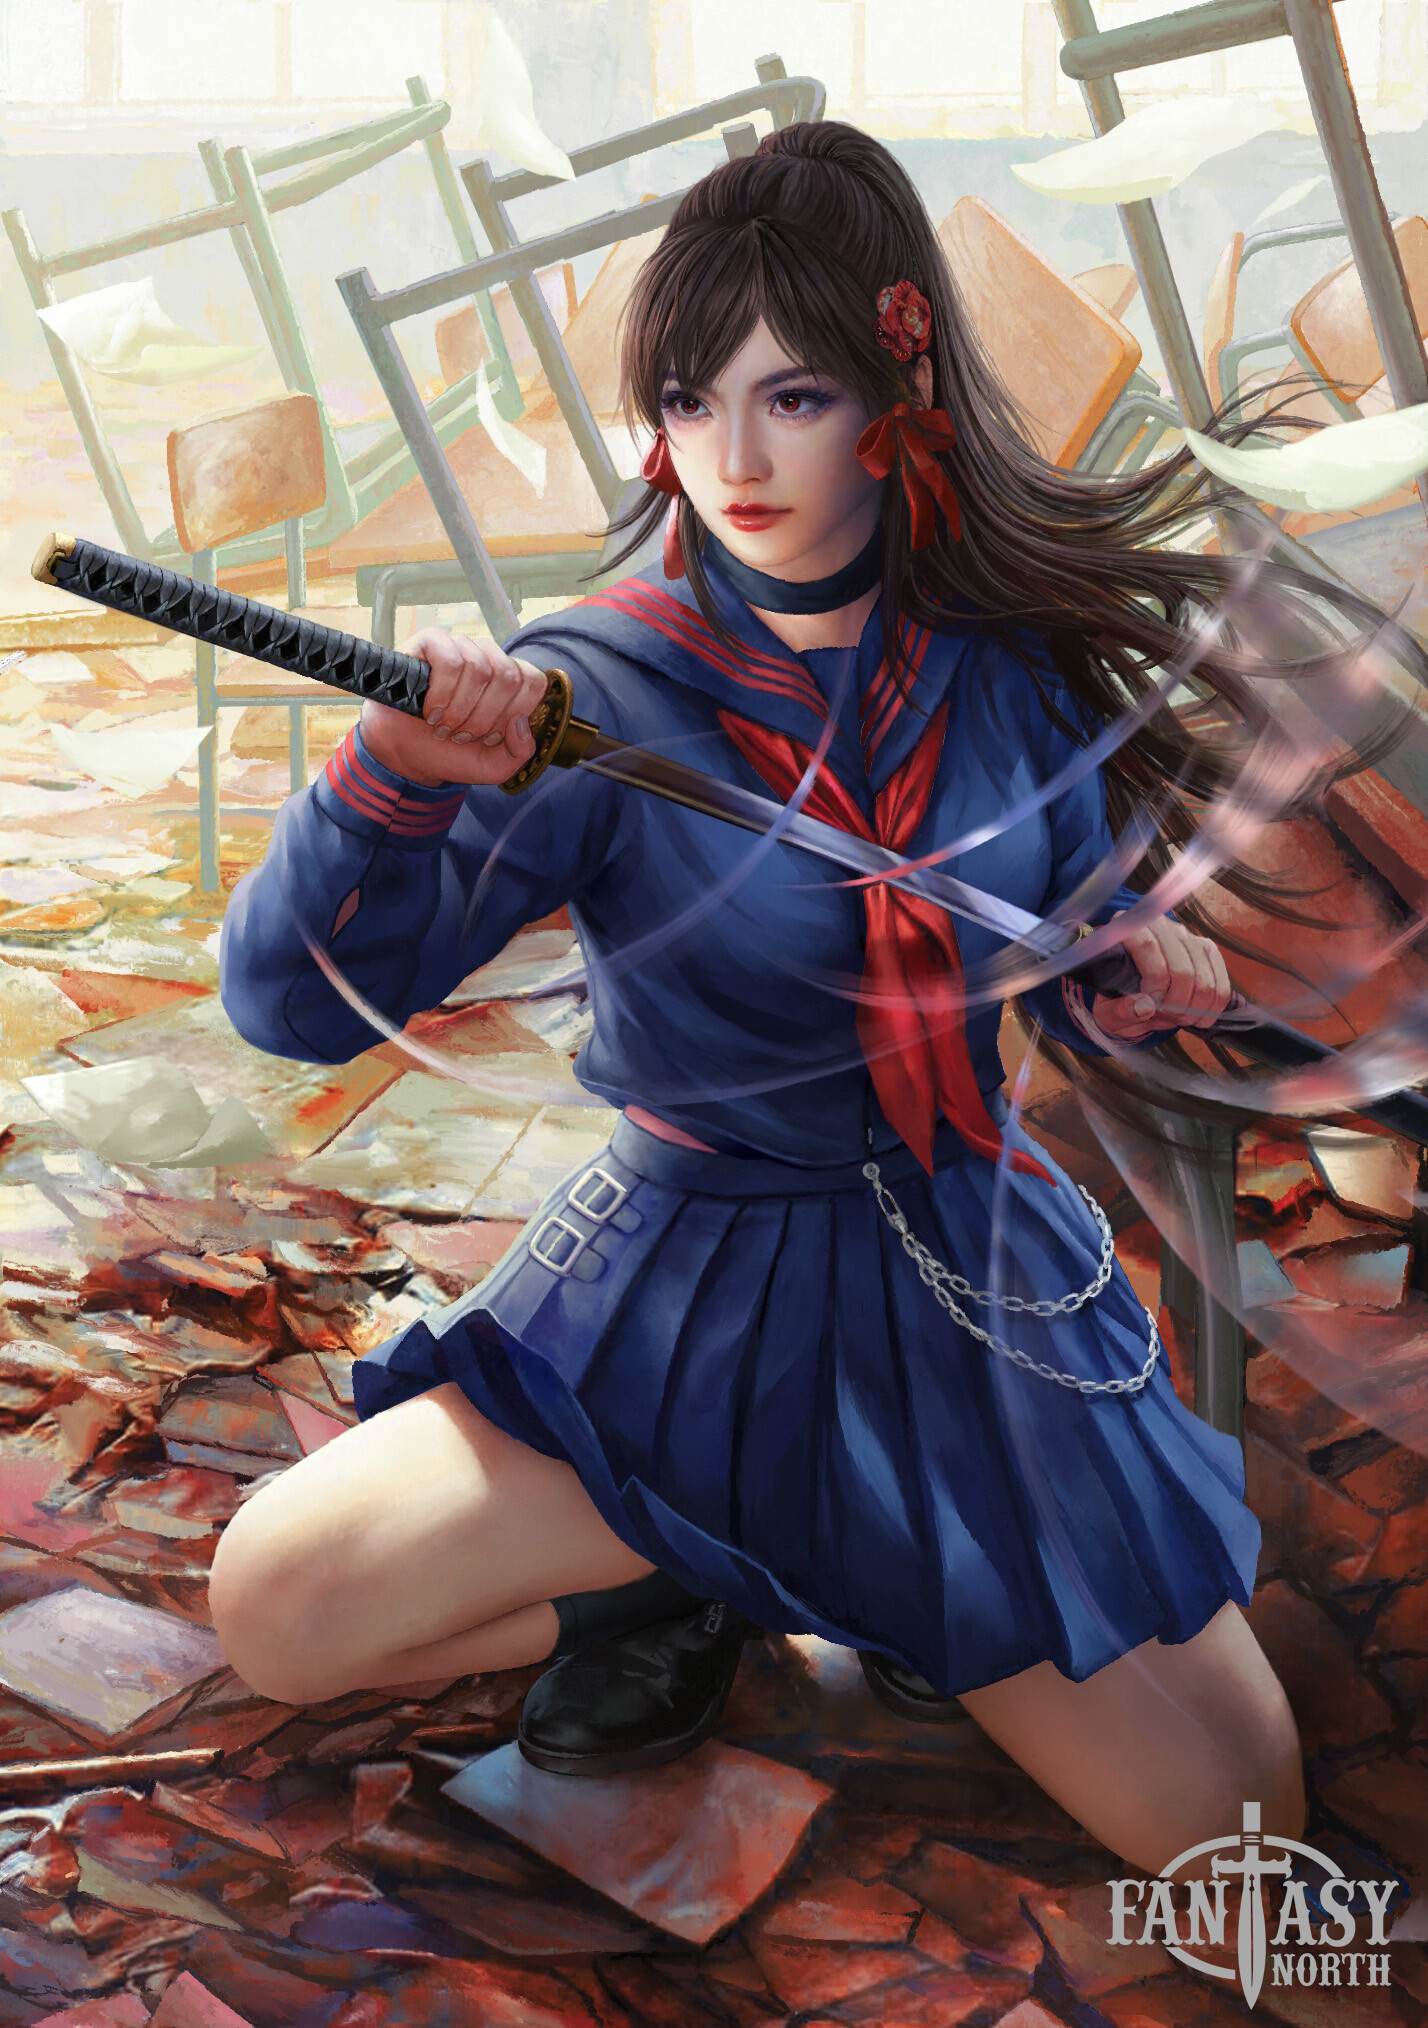 Mario Wibisono Drawing Women Asian Brunette Weapon Schoolgirl Katana Classroom School Uniform 1428x2028